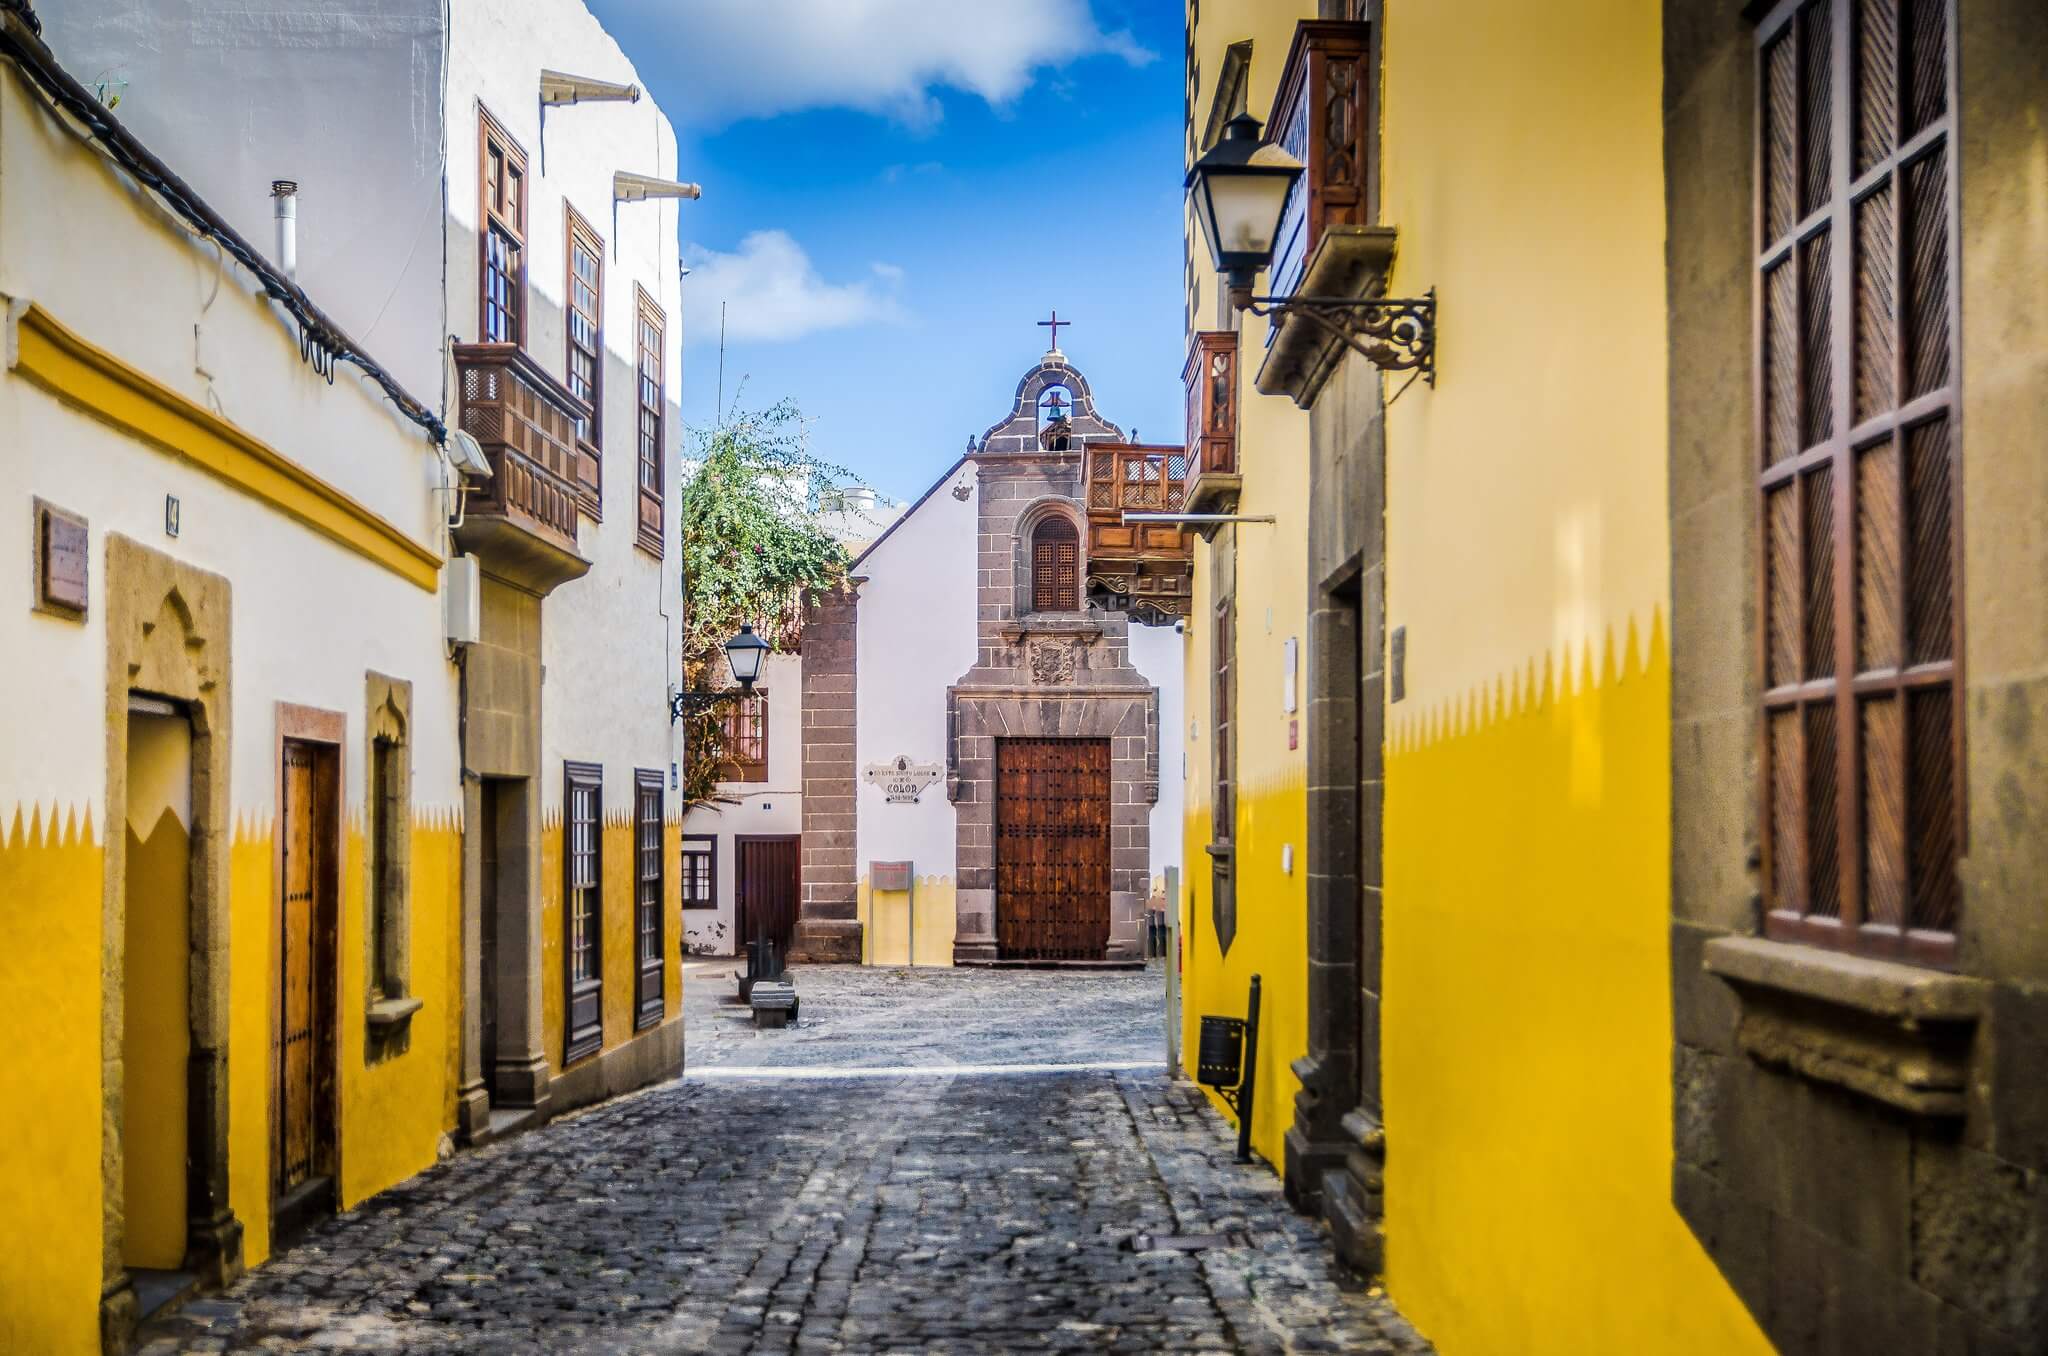 Maisons colorées et rues pavées du charmant quartier de Vegueta sur l'île Gran Canaria